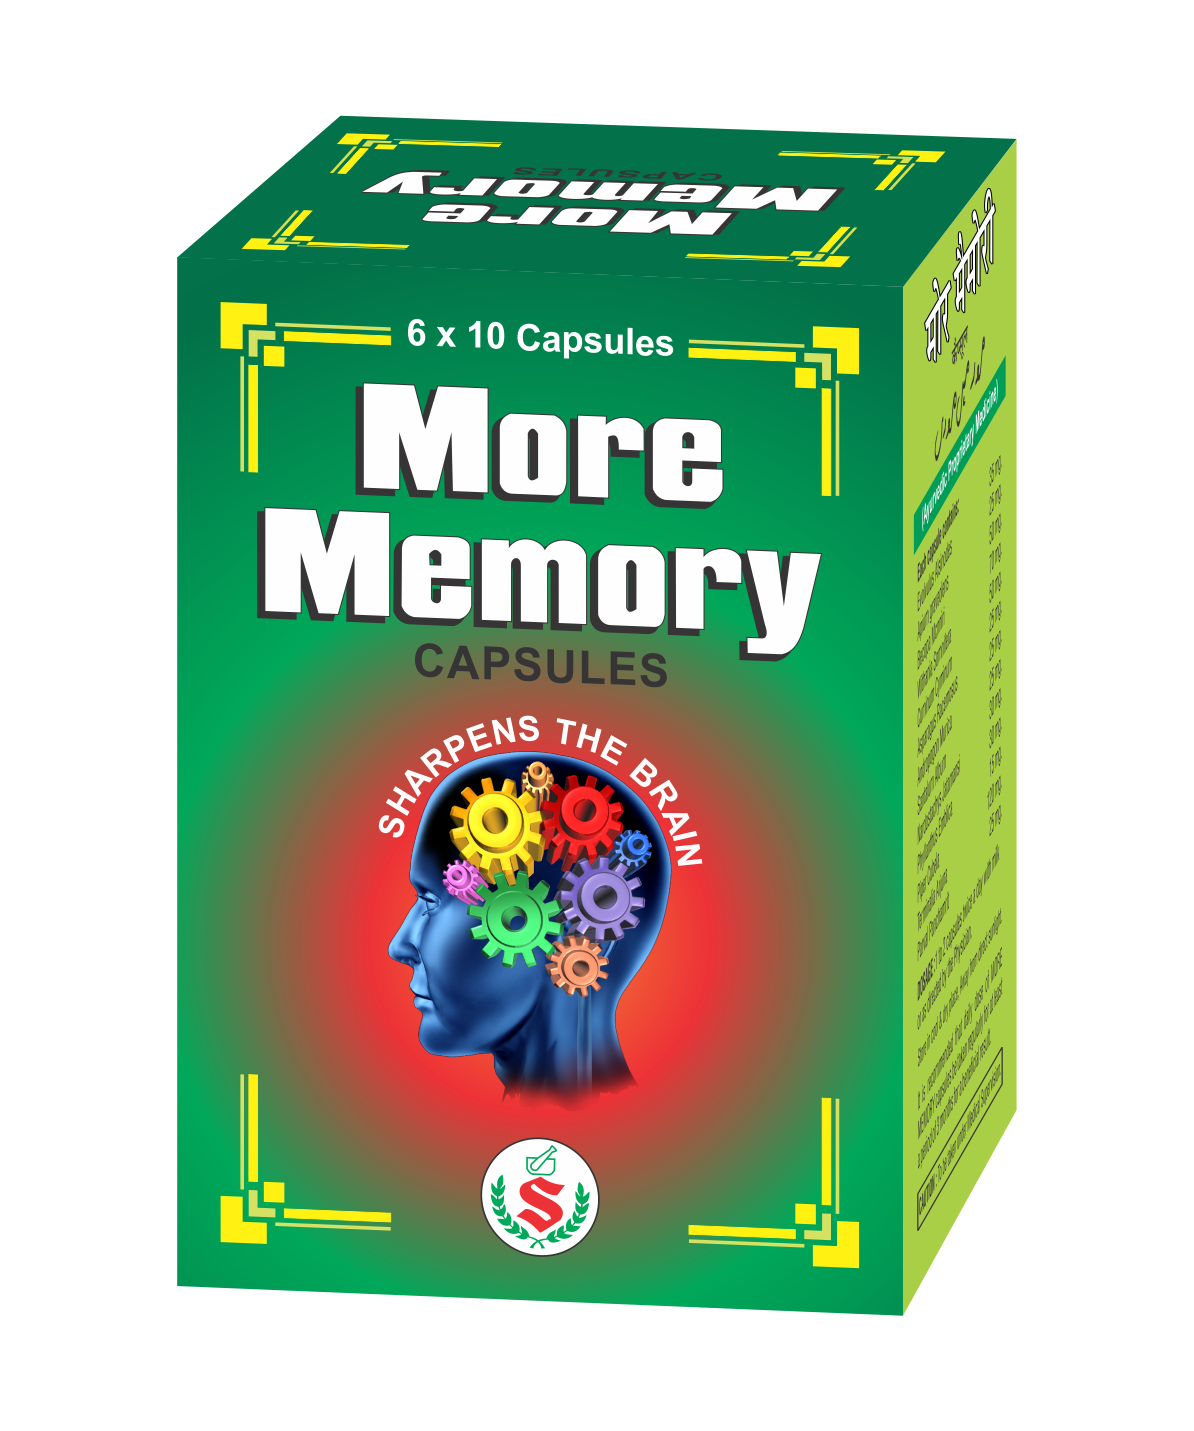 MORE MEMORY CAPSULES